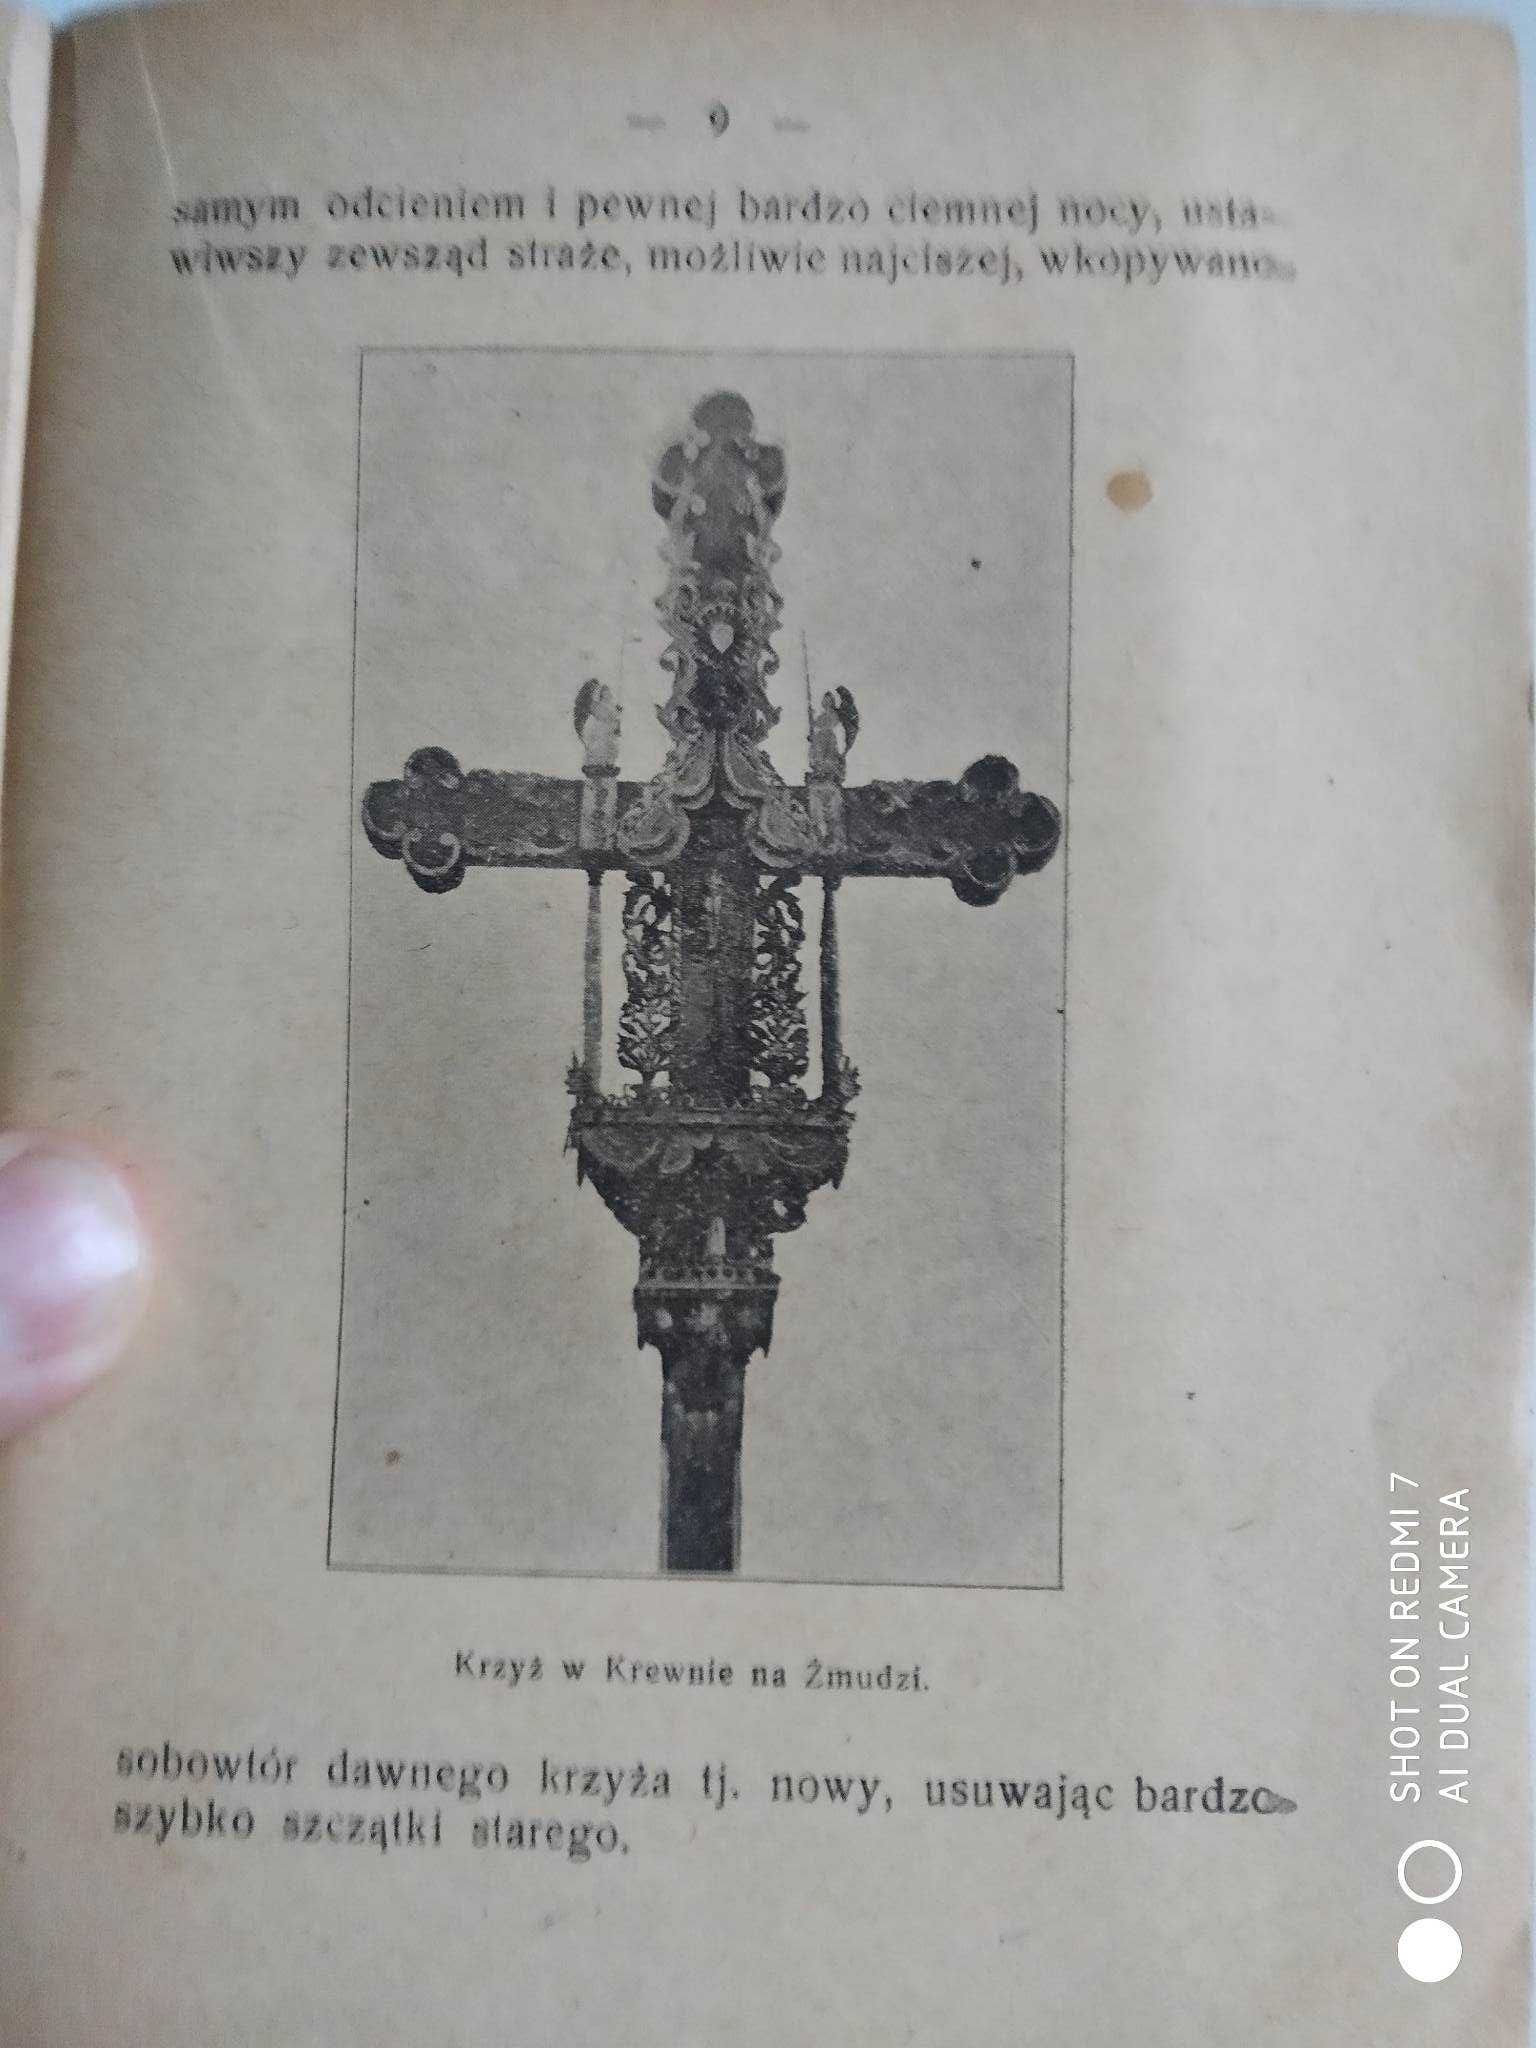 Bronisław Piłsudski "Krzyże i kapliczki" 1922.